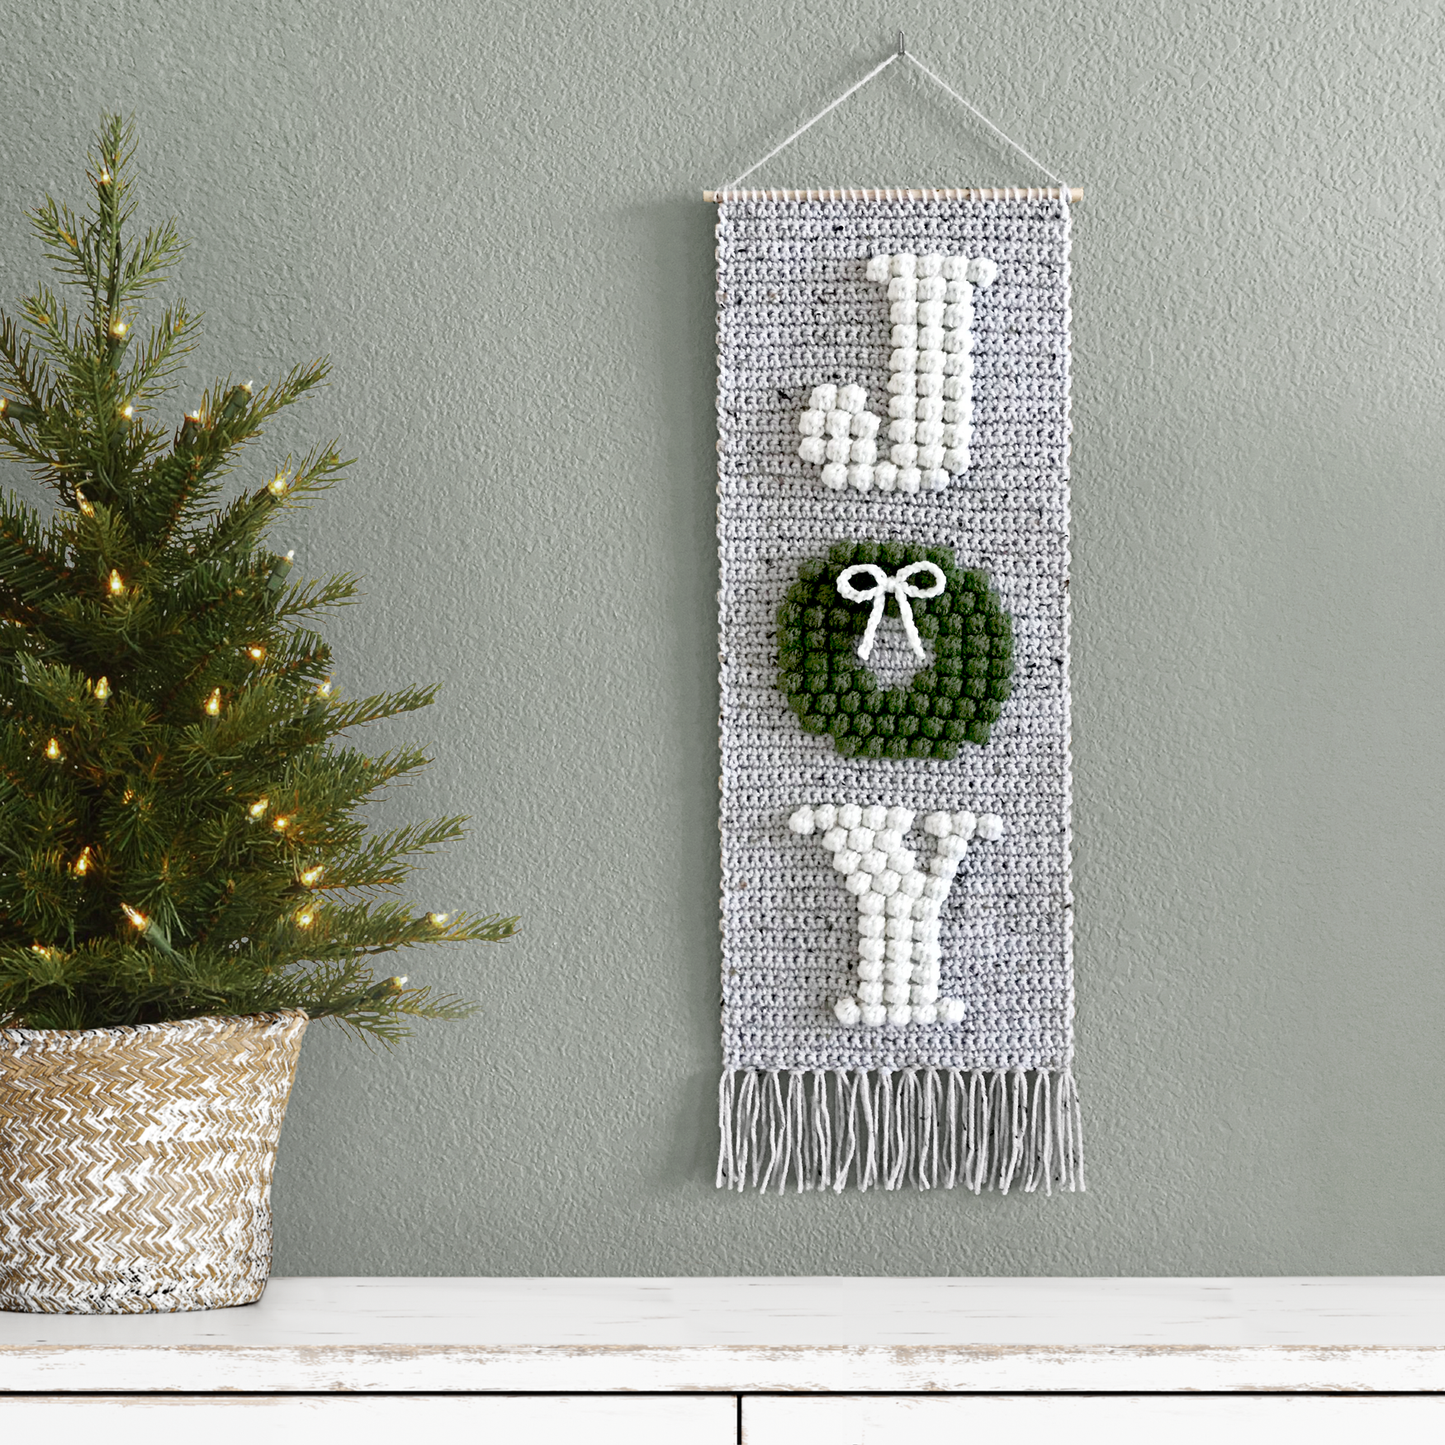 Joy Wall Hanging | Crochet Pattern